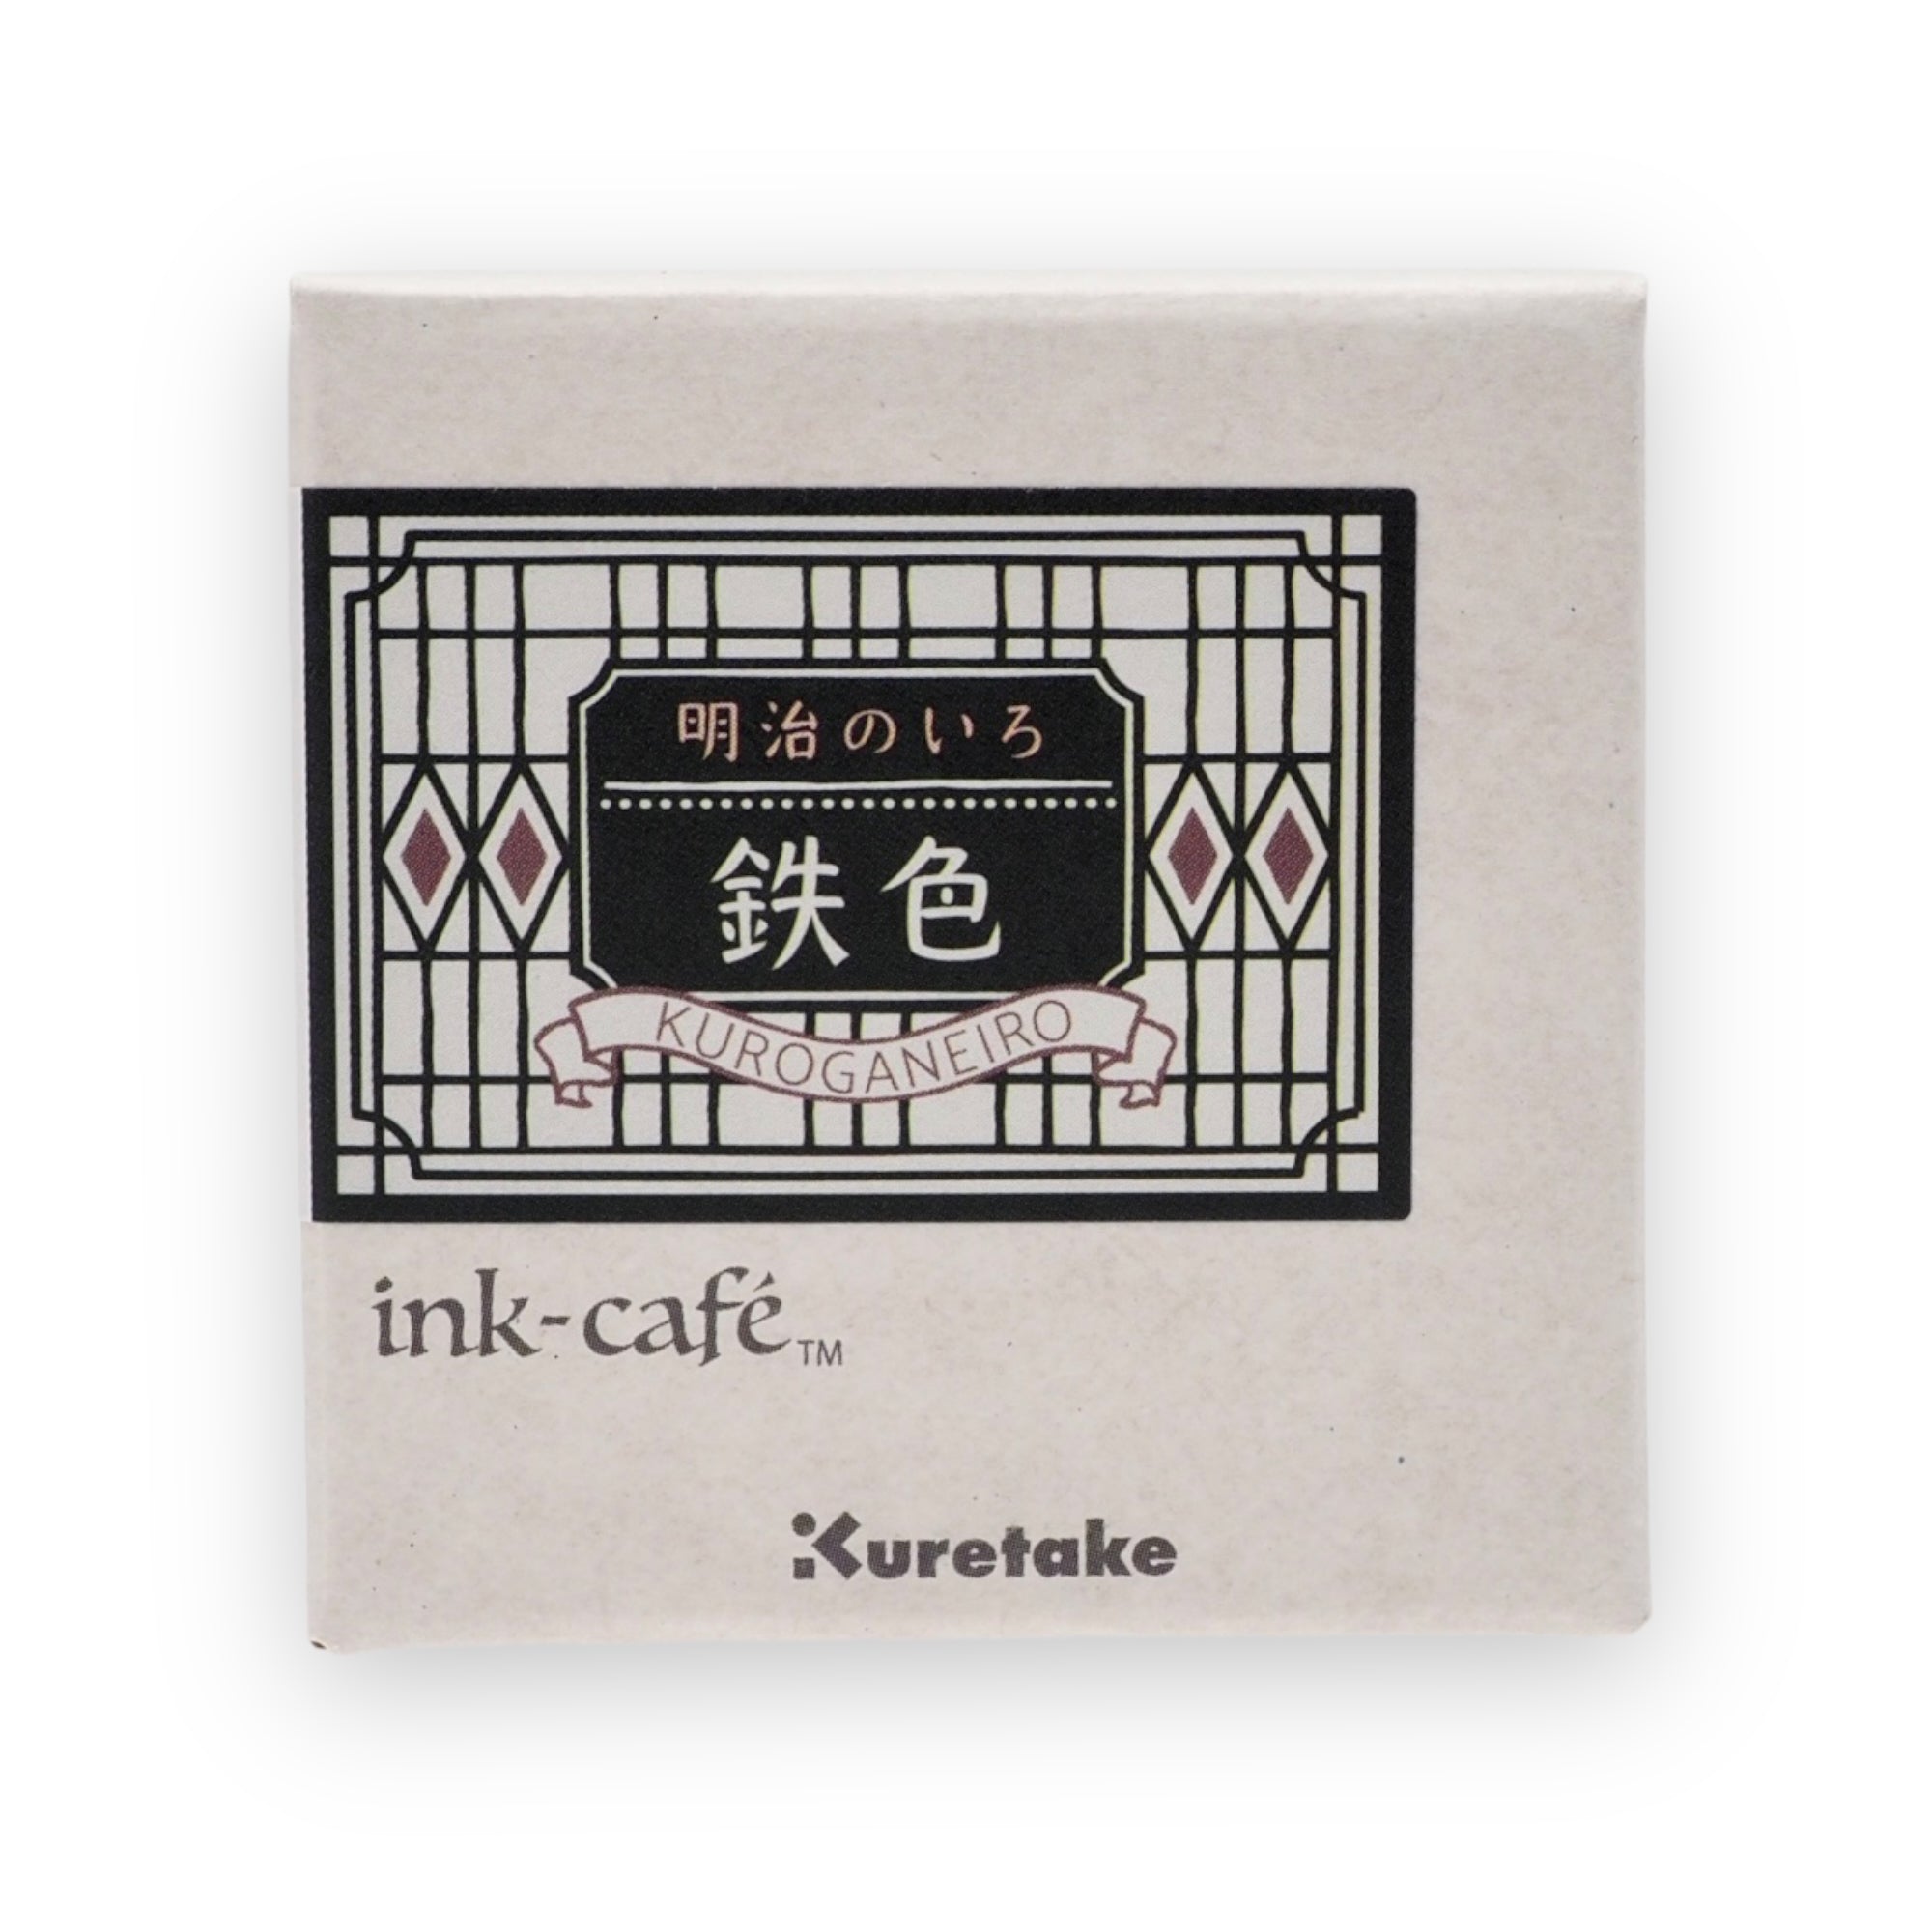 Kuretake - Ink Cafe Kuroganeiro